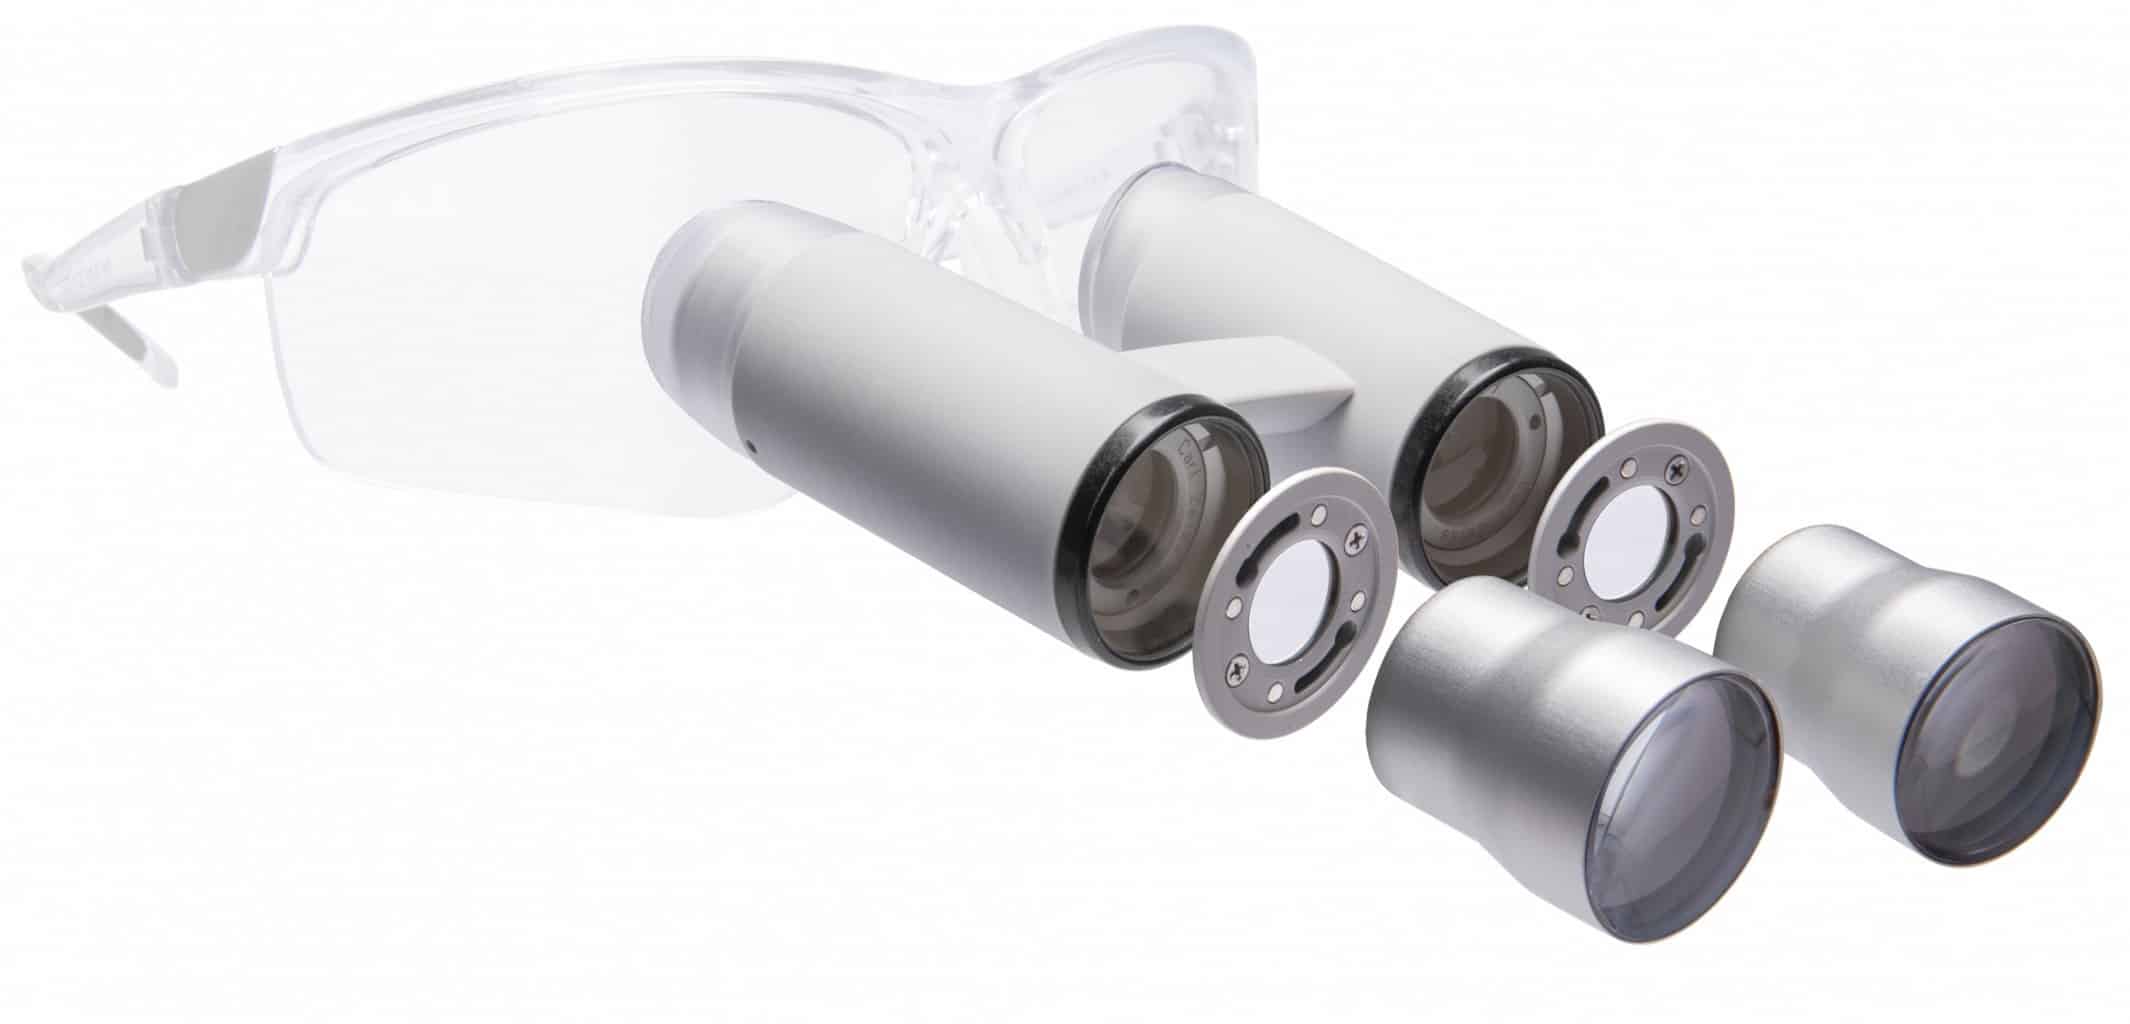 Attachment Eyepieces Macro-Line 1.5x for Swarovski/Zeiss